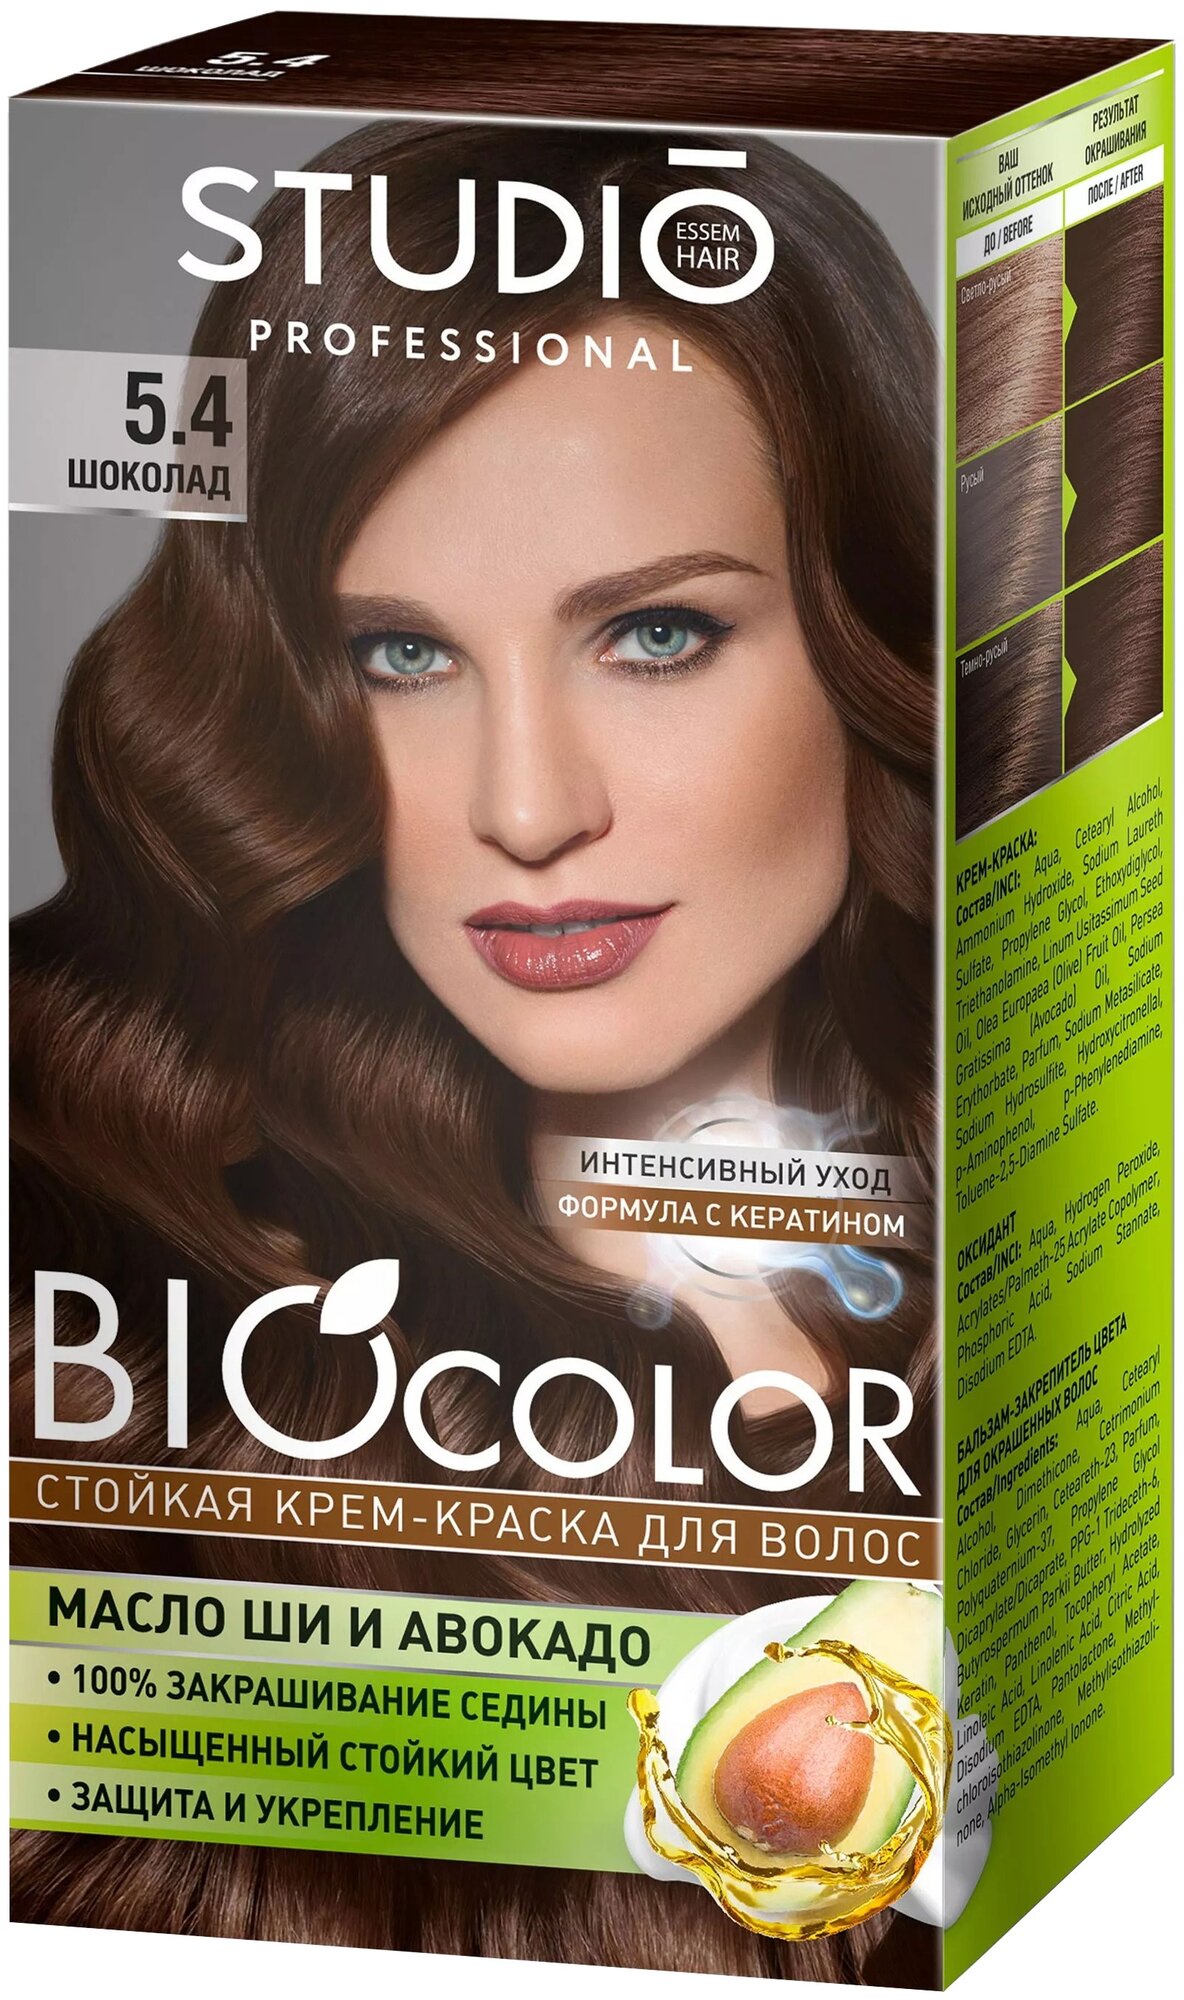 Essem Hair Studio Professional BioColor стойкая крем-краска для волос 115 мл